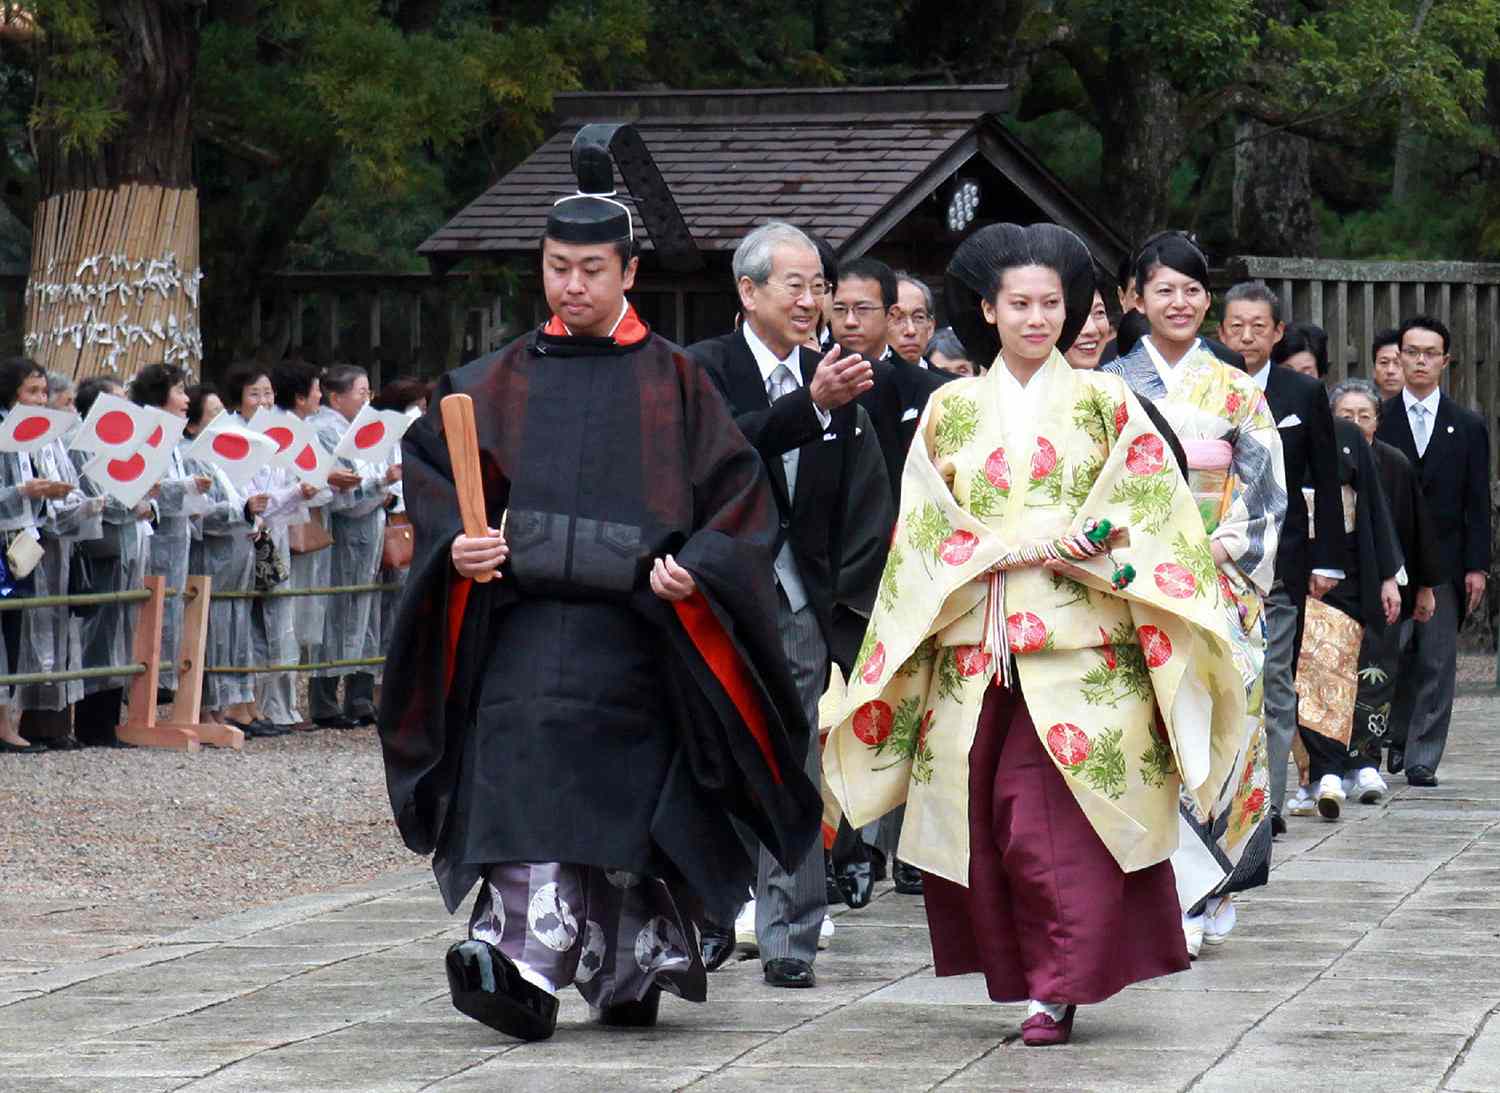 Japans Princess Noriko, Prince Takamado